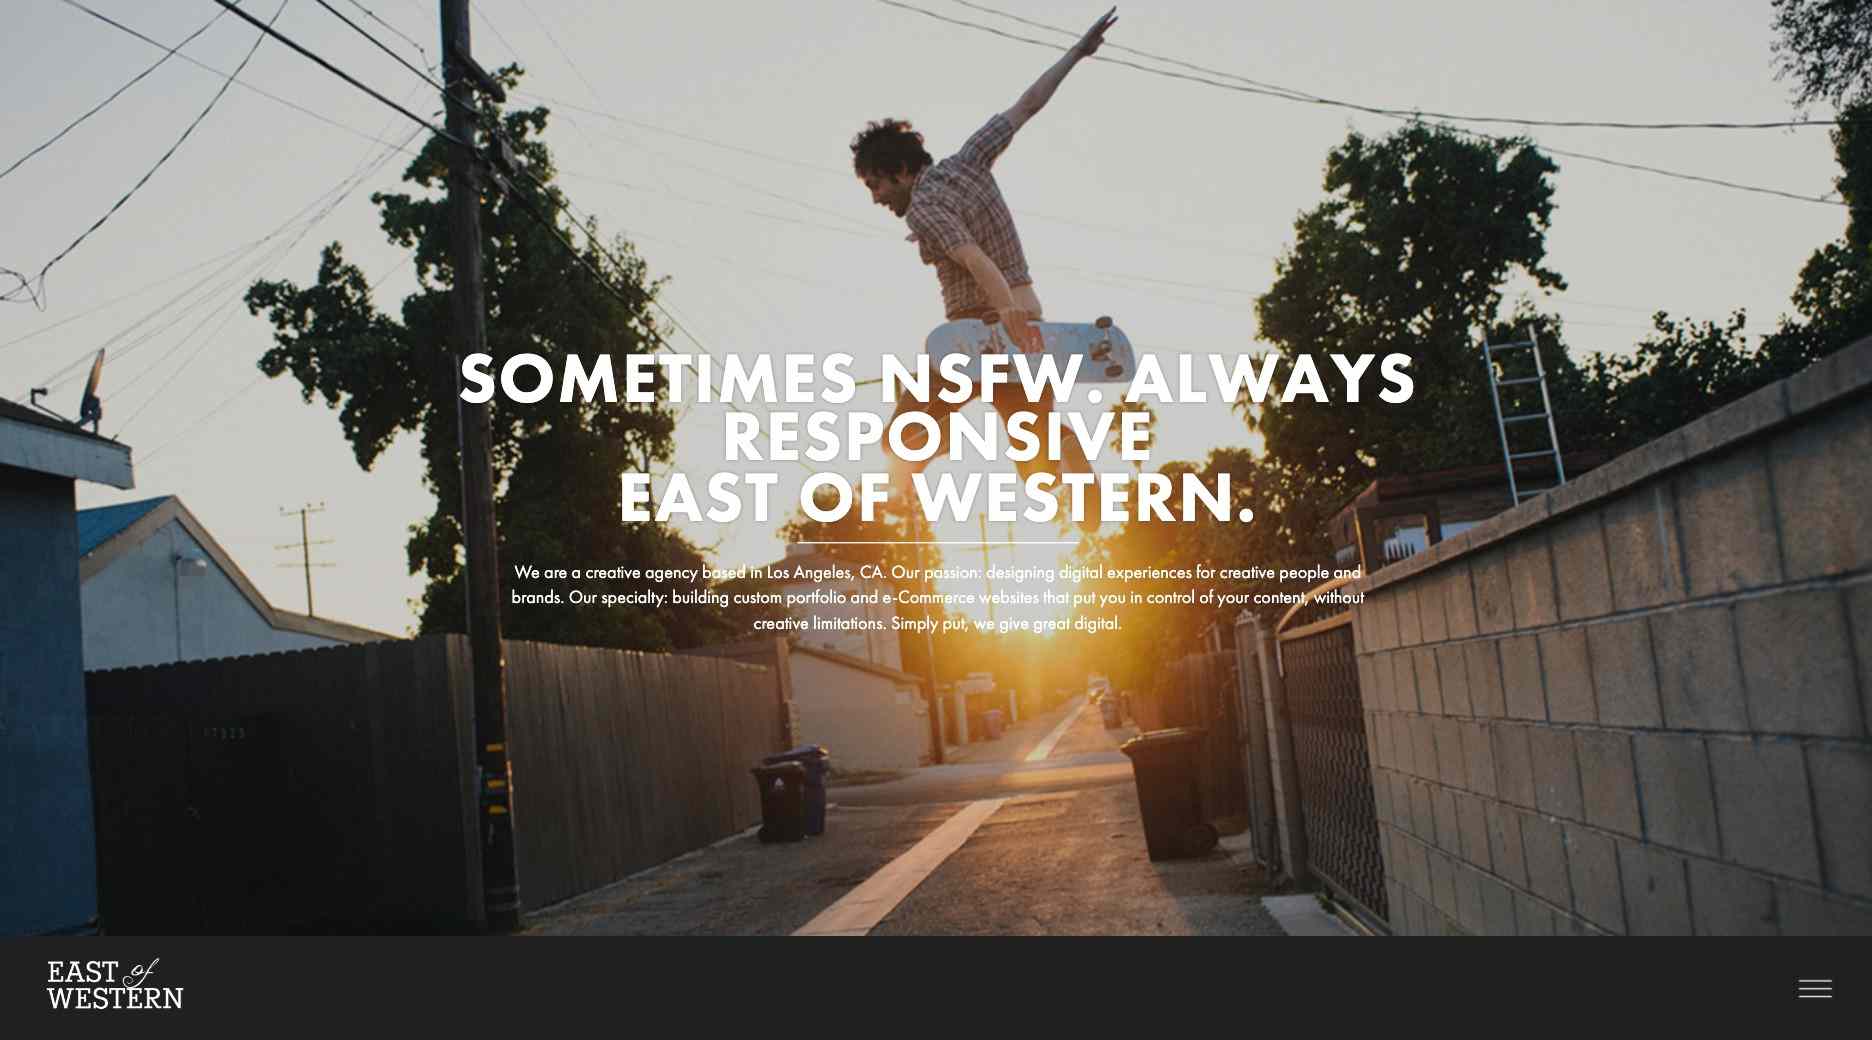 East of Western